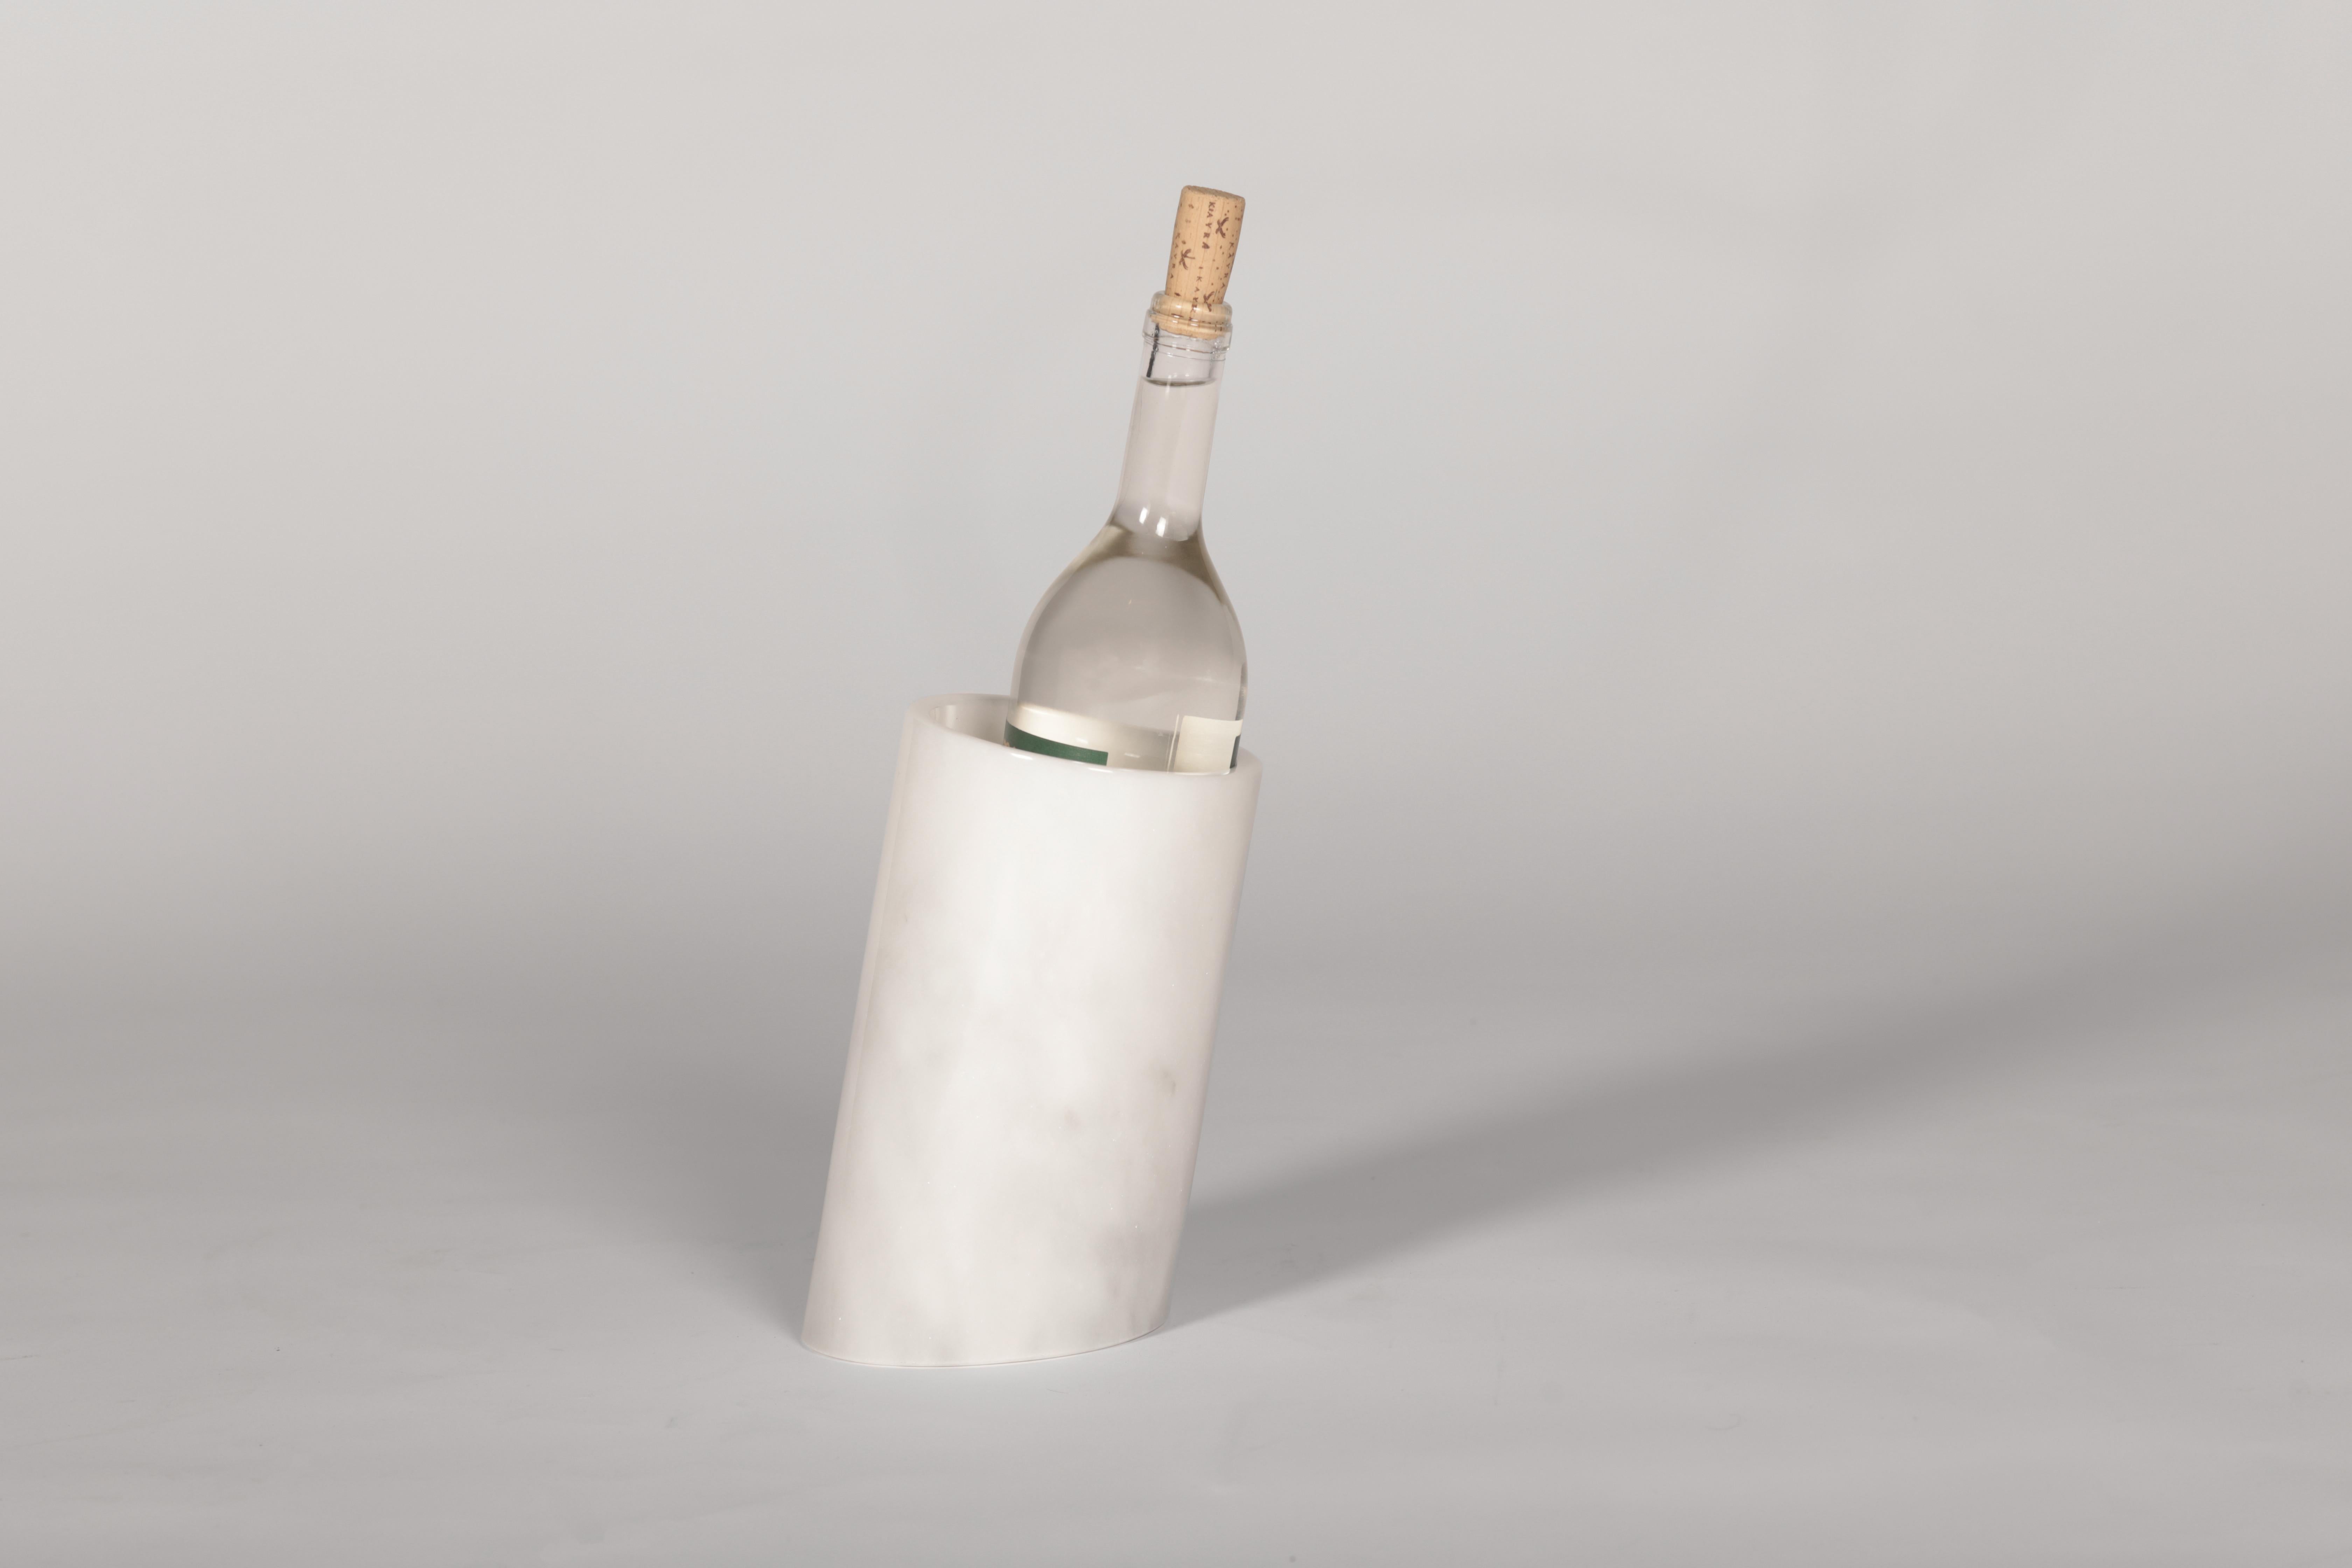 Die elegante und nützliche Botella wurde entwickelt, um Ihre Spirituosenflaschen mit der Kälte des Marmors zu kühlen und sie stilvoll zu servieren.

Da es sich bei Marmor um ein natürliches MATERIAL handelt, können die Farben und Maserungen von dem